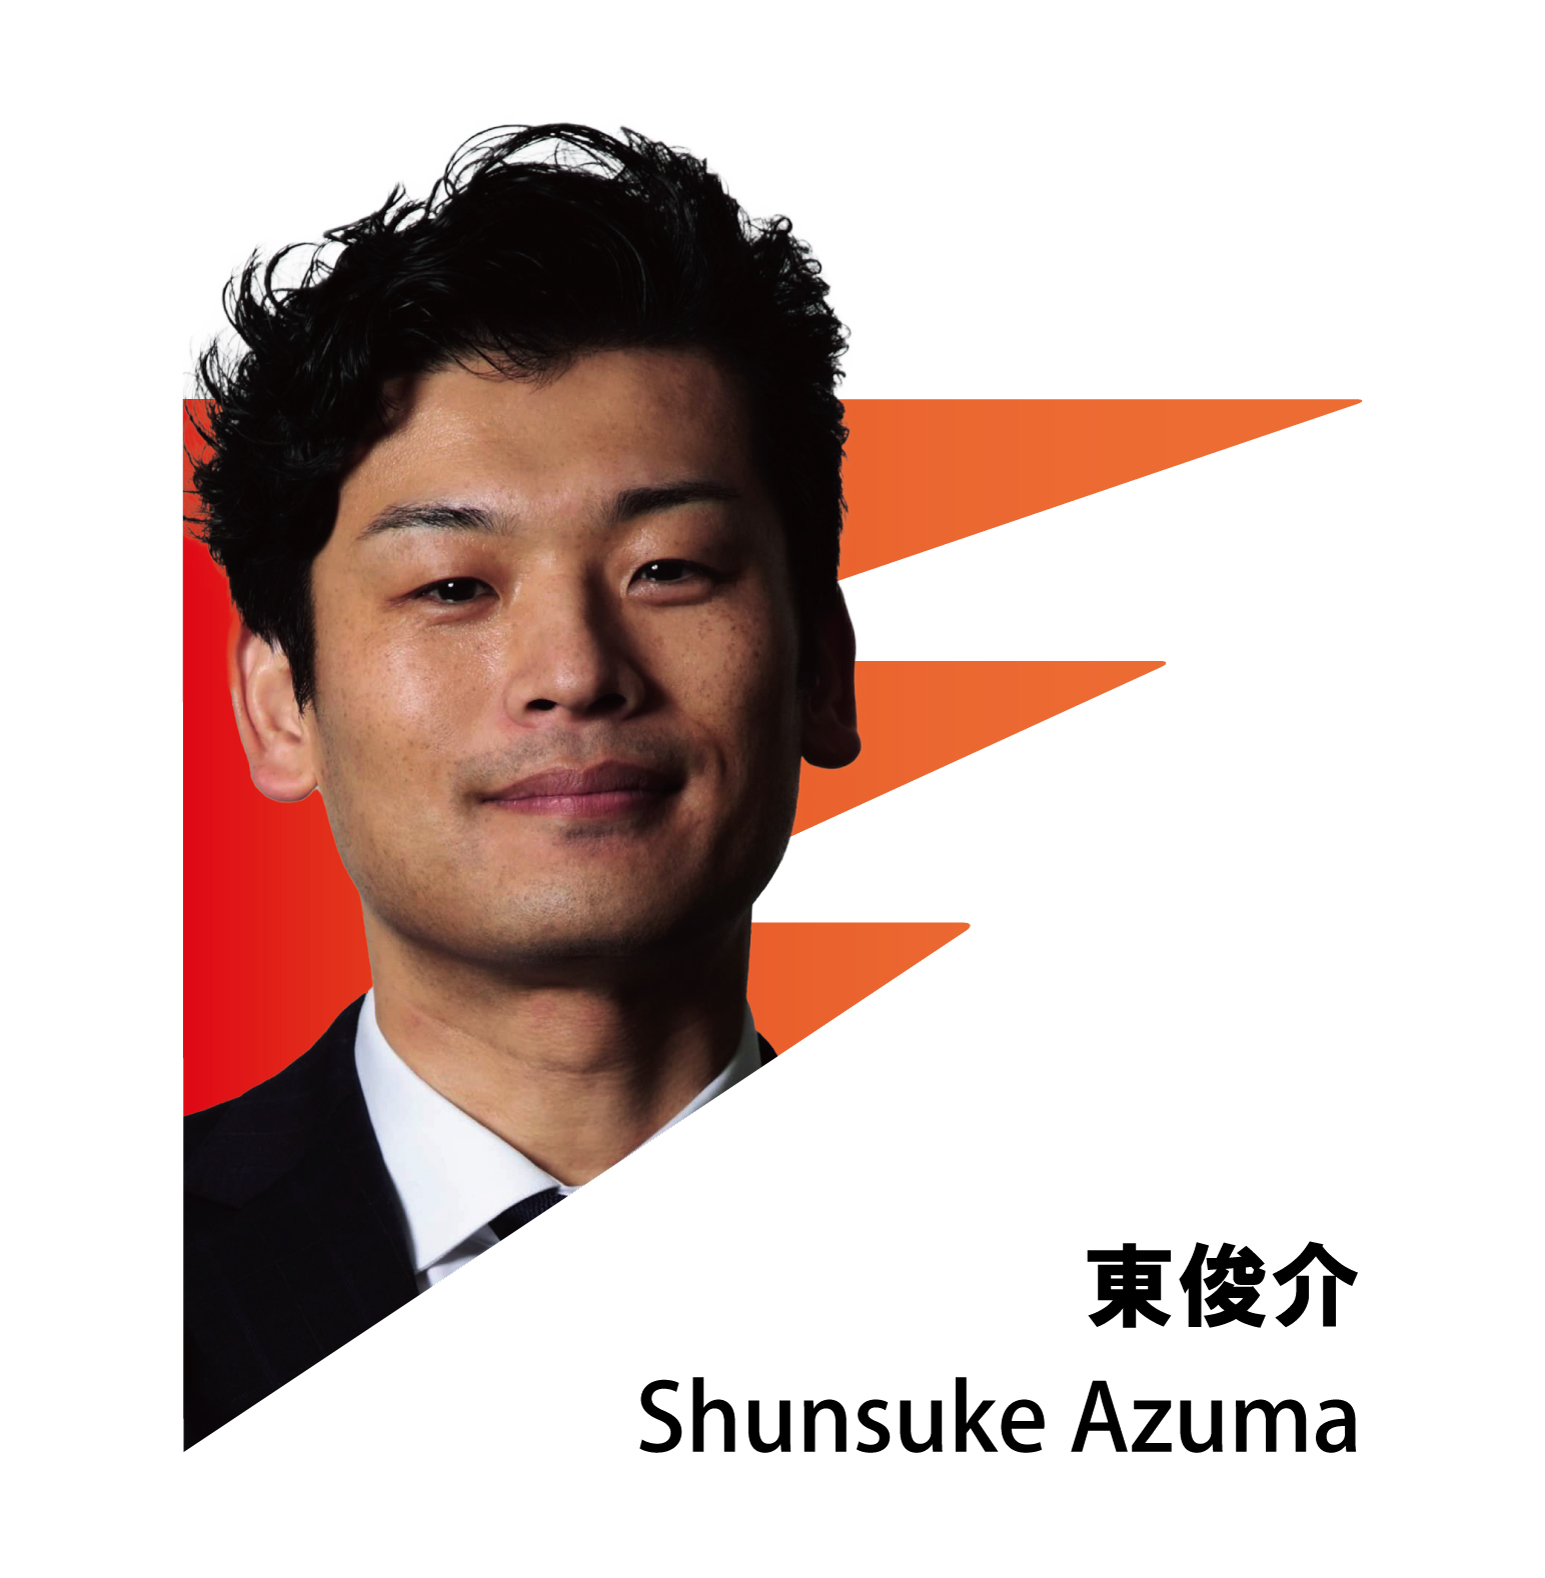 SHUNSUKE AZUMA